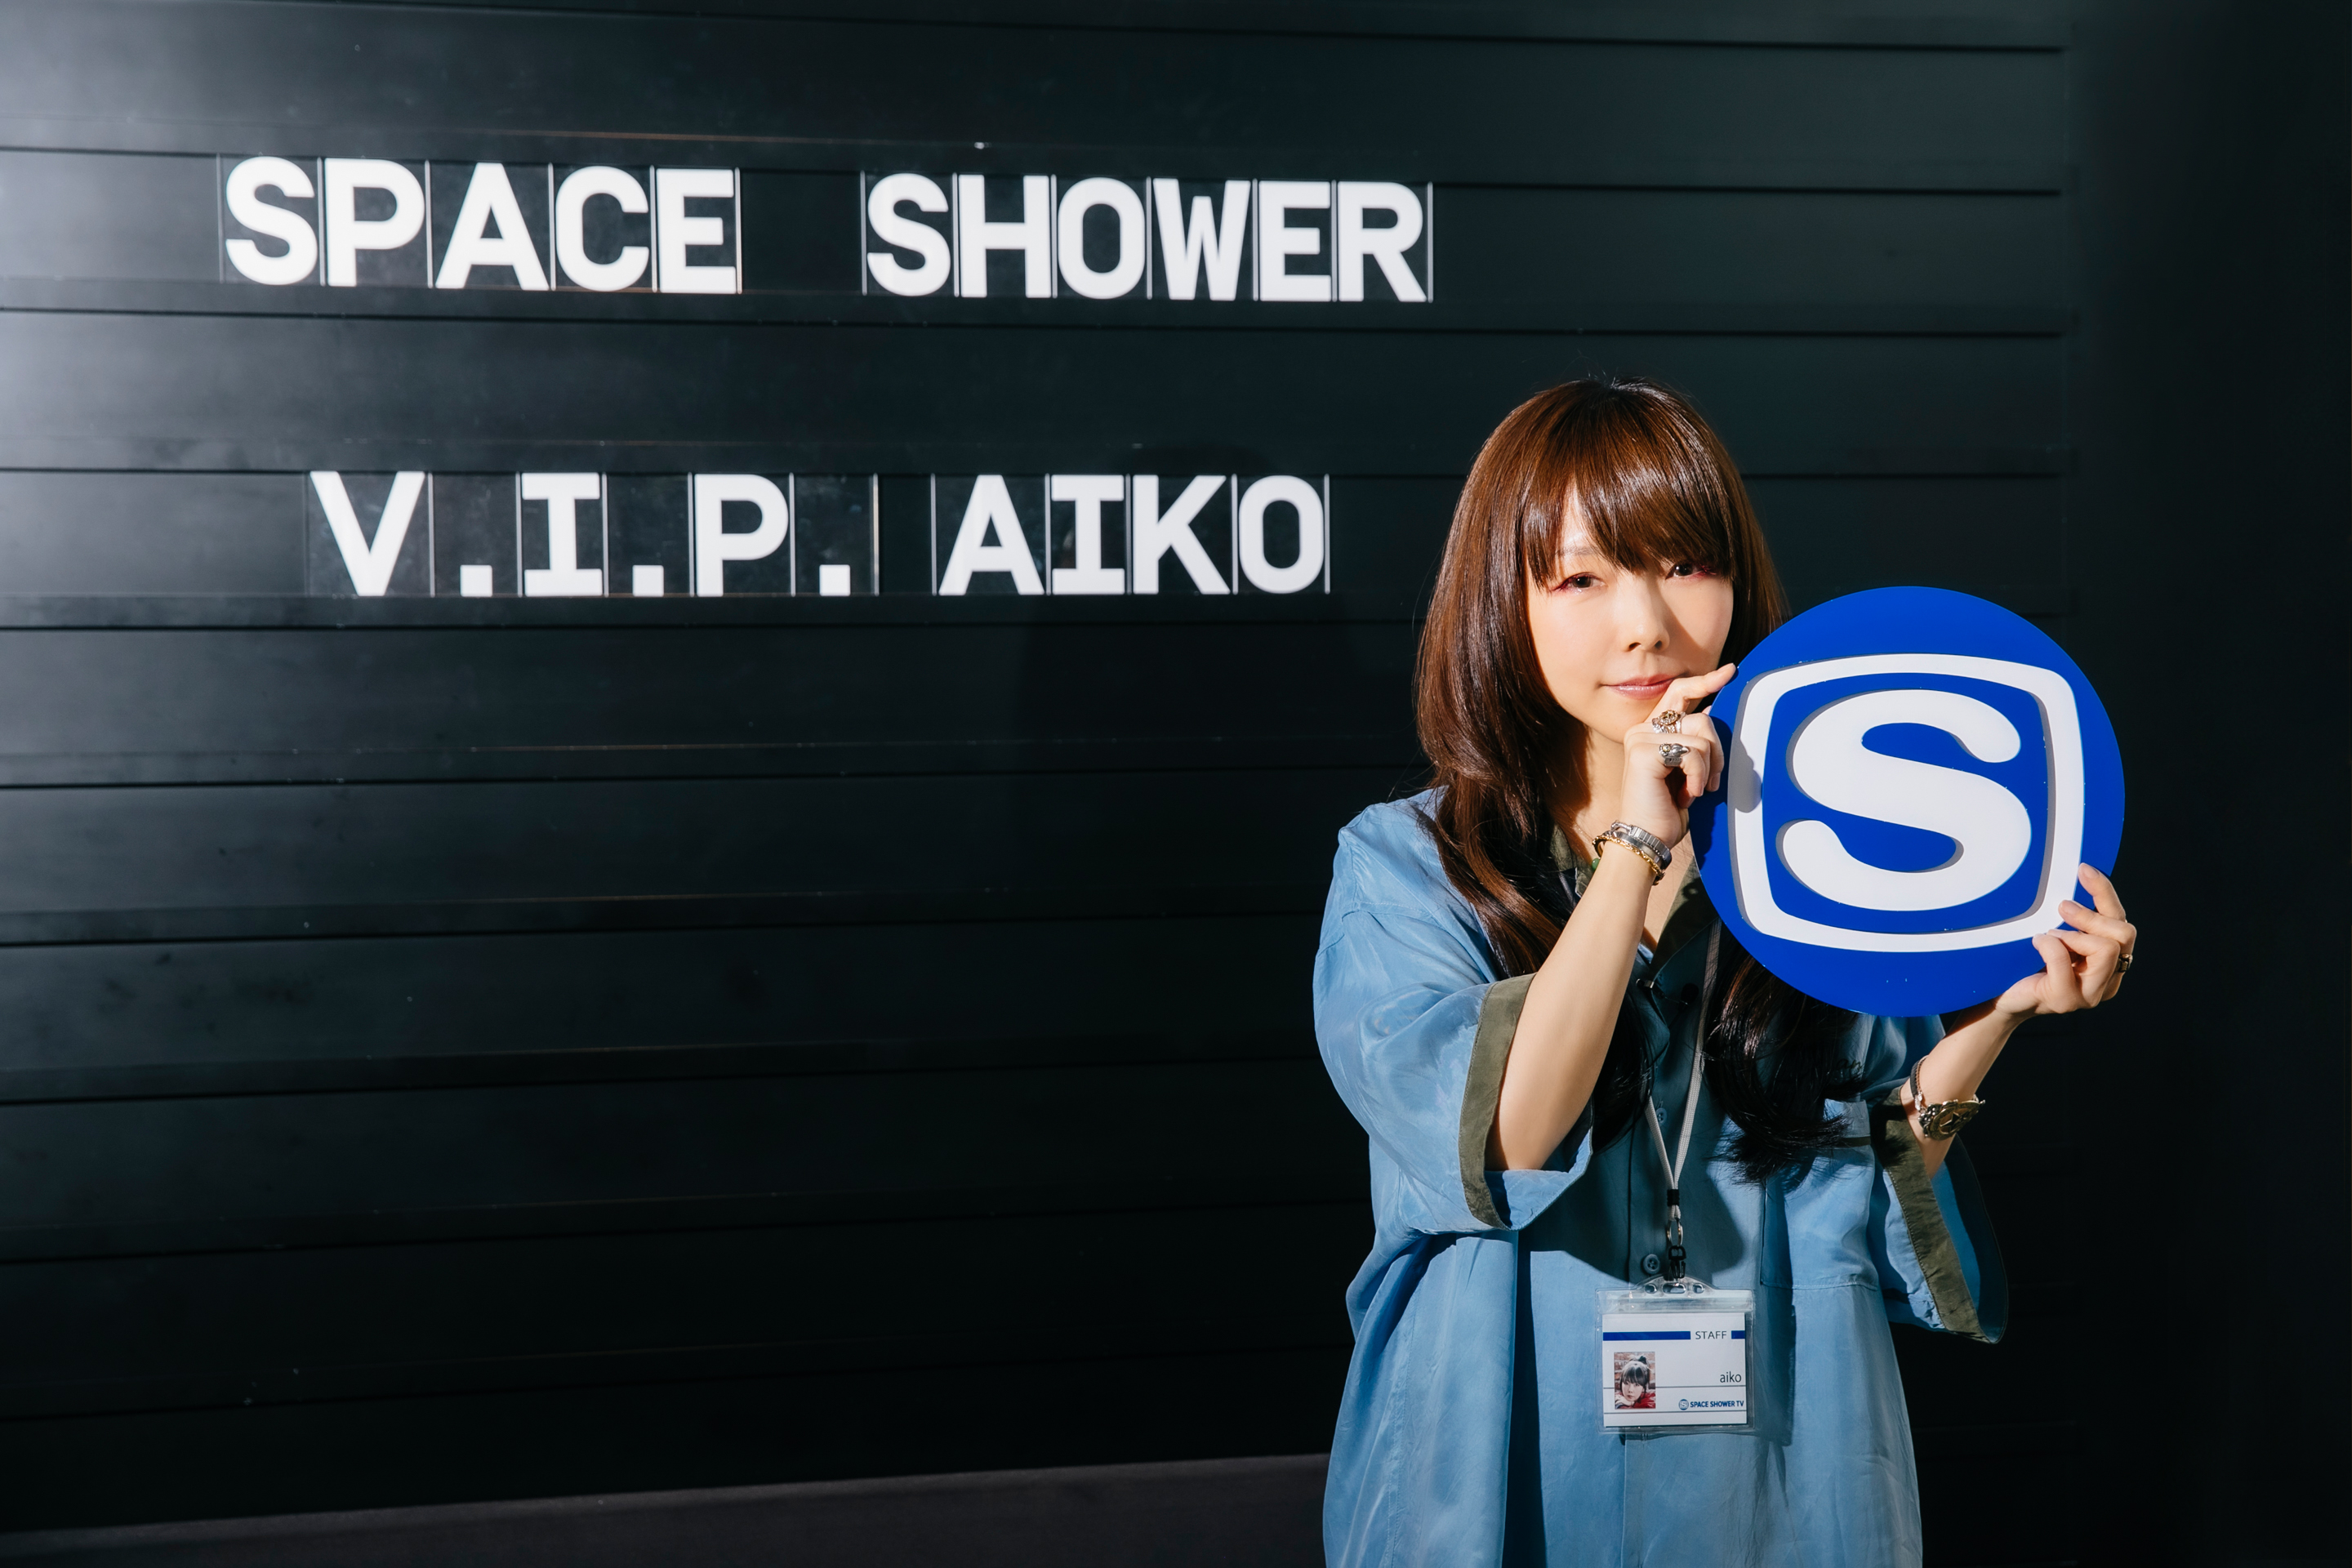 Aikoの特別番組をスペースシャワーtvで独占放送 ドローン操縦やお寿司大食いチャレンジなど Aikoが様々な ミッションに挑戦 株式会社スペースシャワーネットワークのプレスリリース